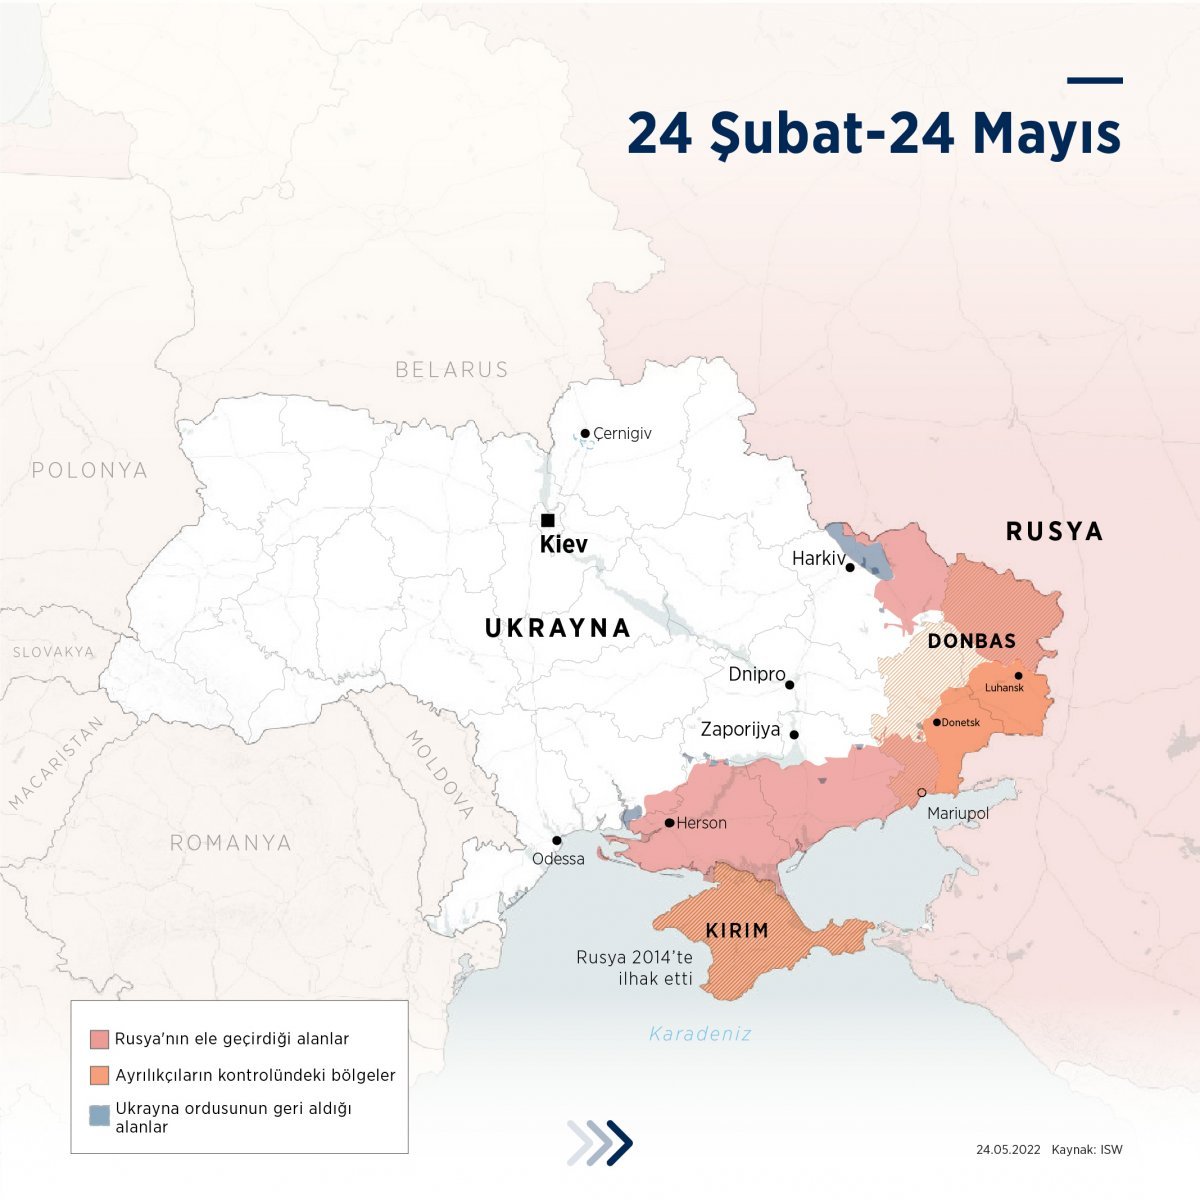 Russia-Ukraine war in its third month #3